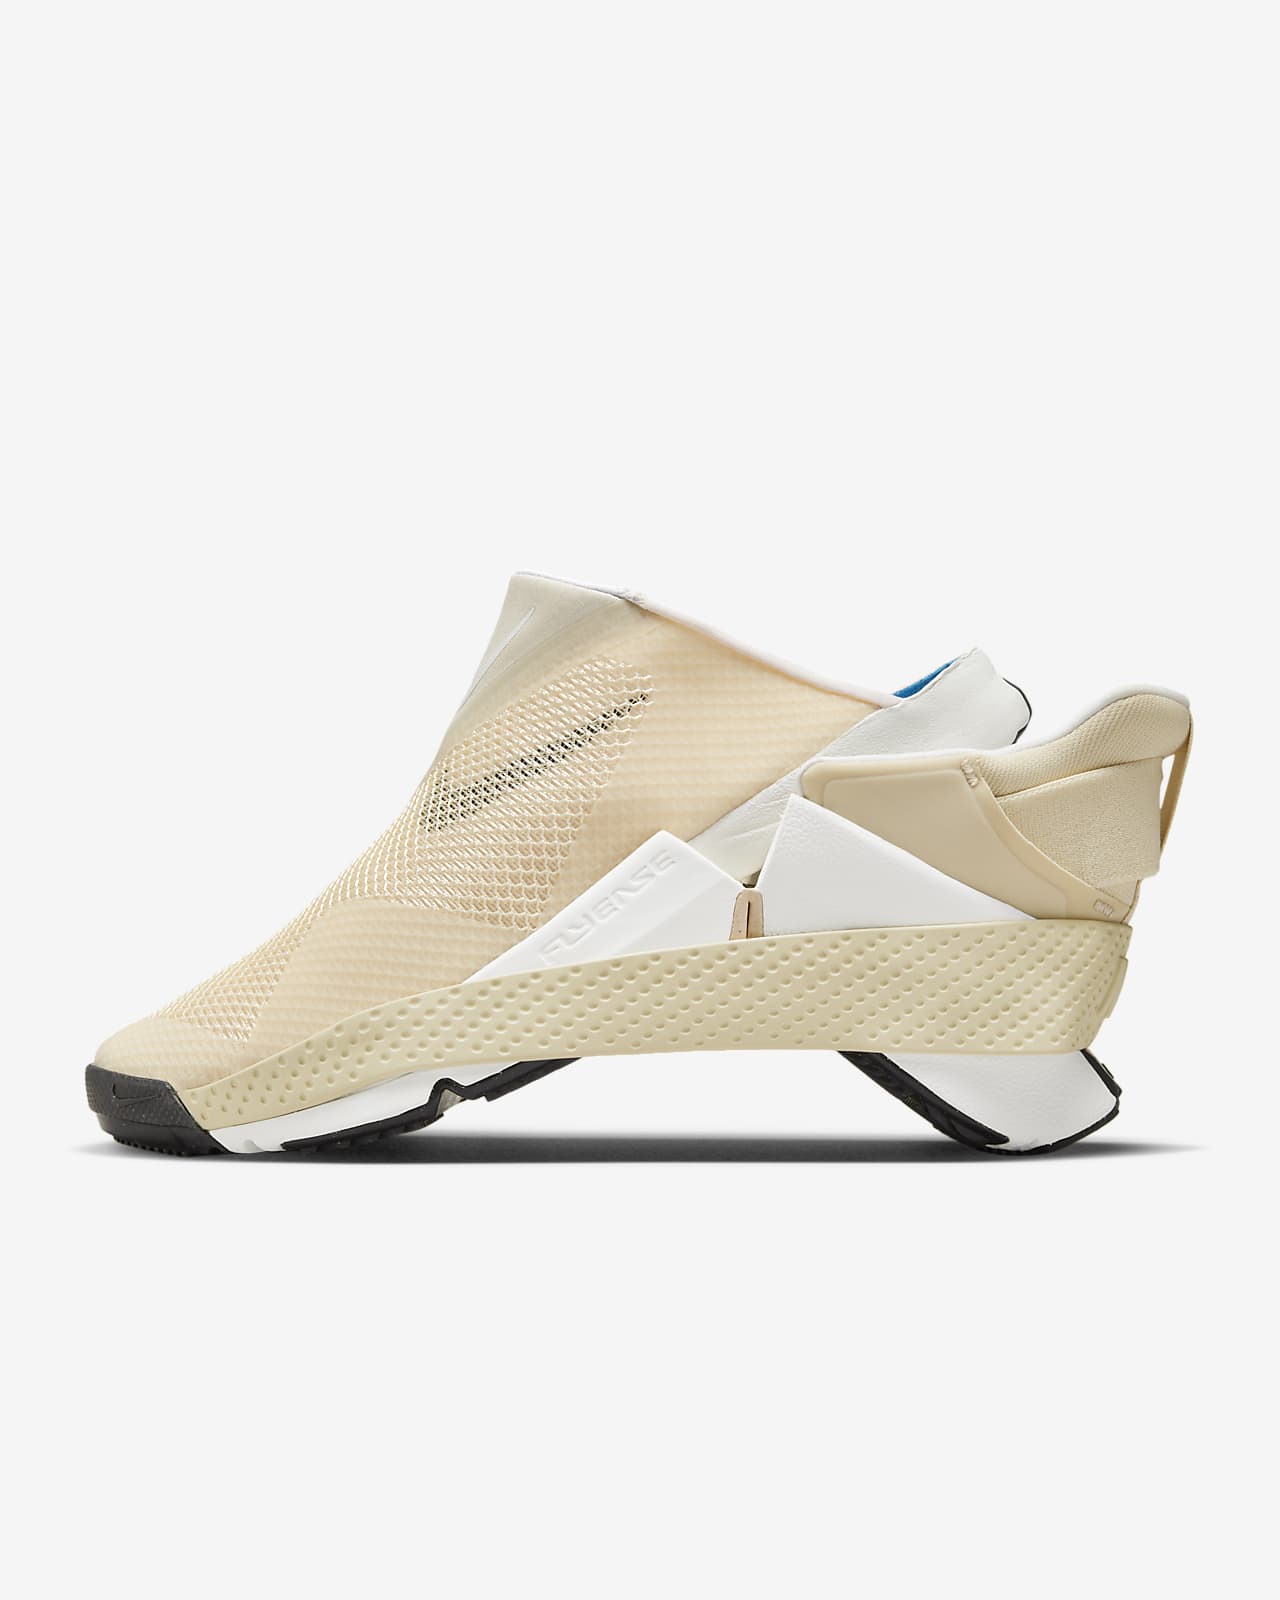 Nike Go FlyEase Schuhe für einfaches An- und Ausziehen